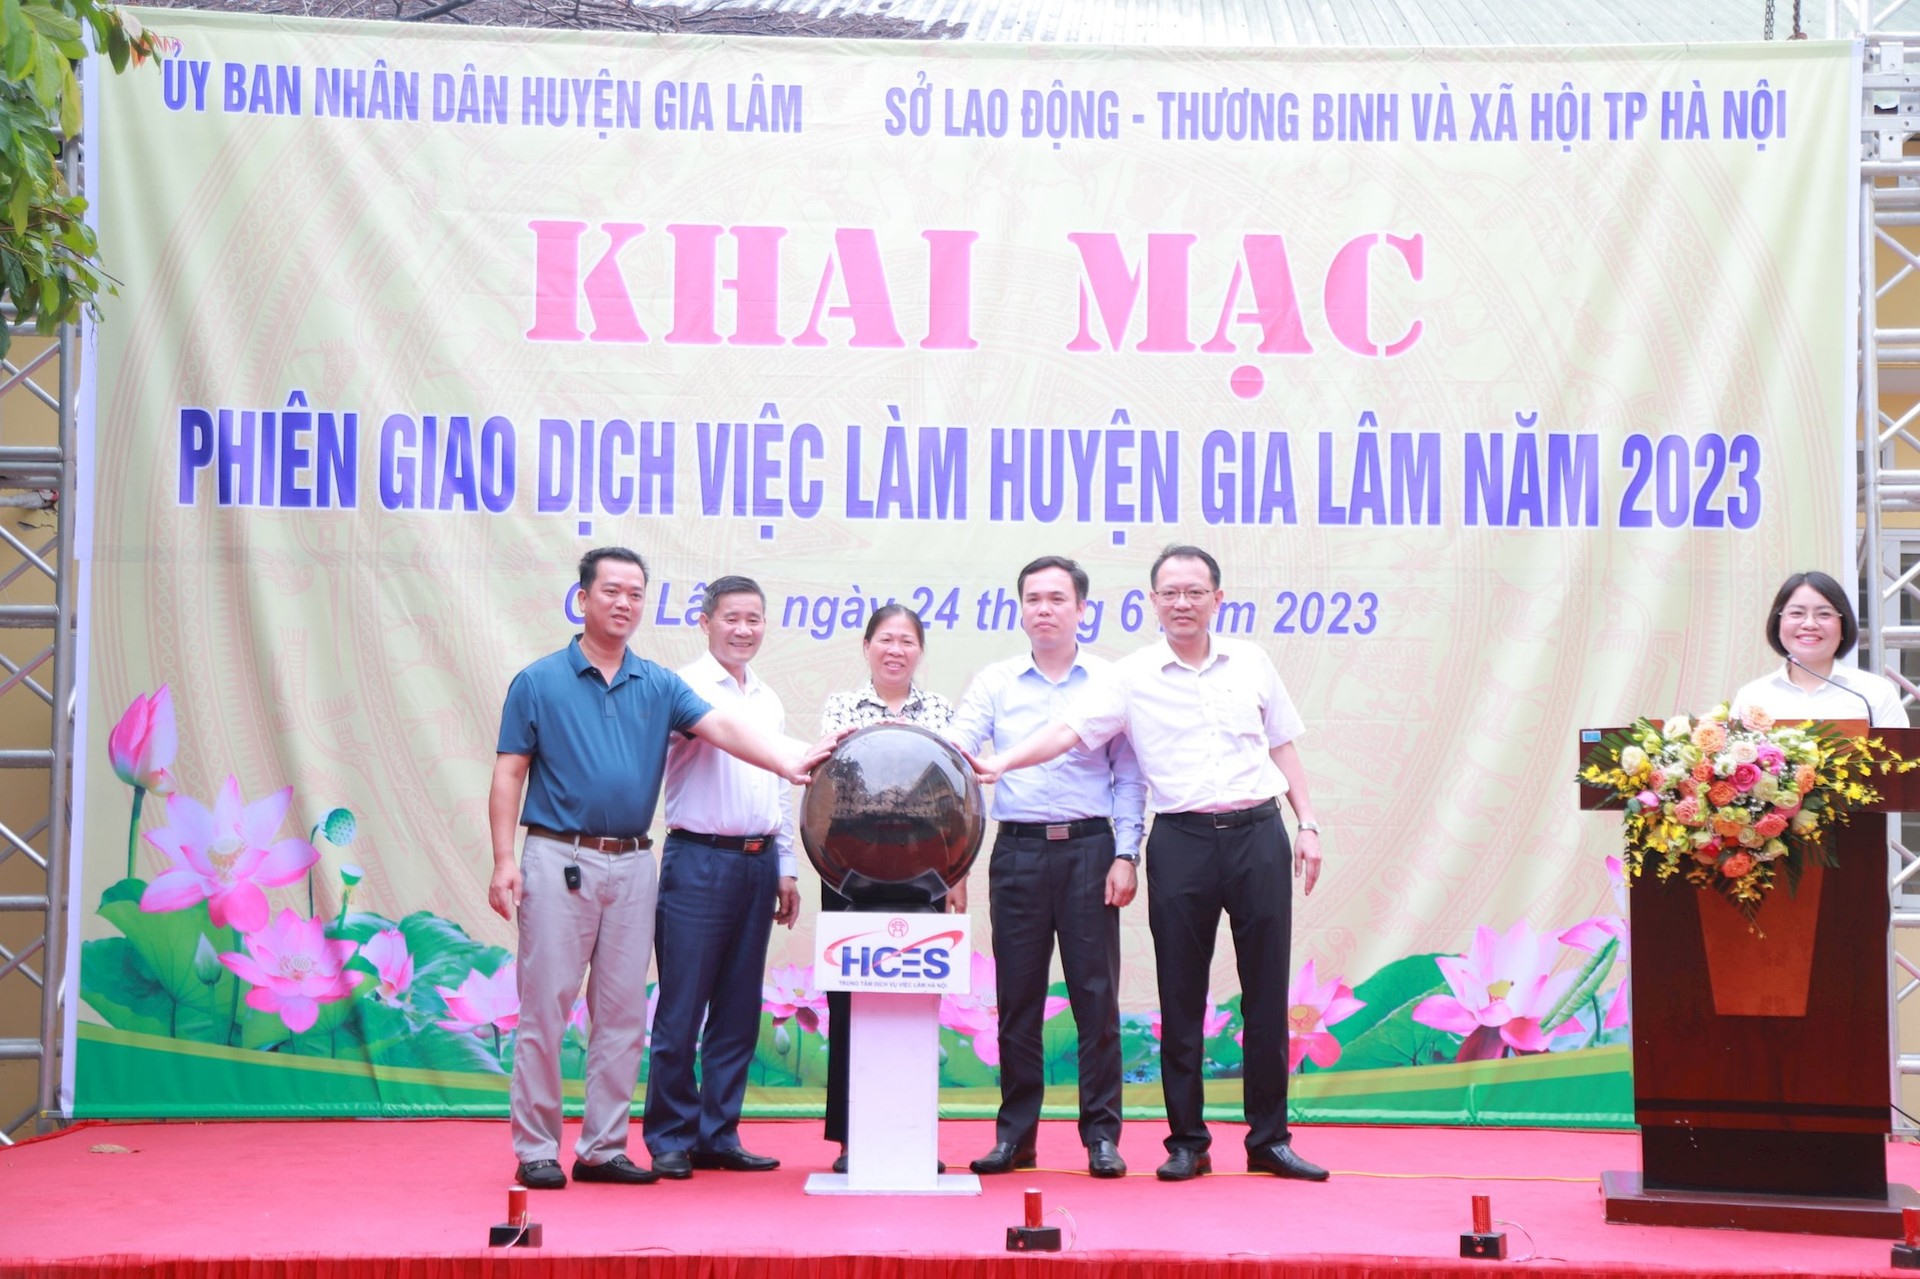 Các đại biểu bấm nút khai mạc Phiên giao dịch việc làm huyện Gia Lâm năm 2023. Ảnh: Trần Oanh.